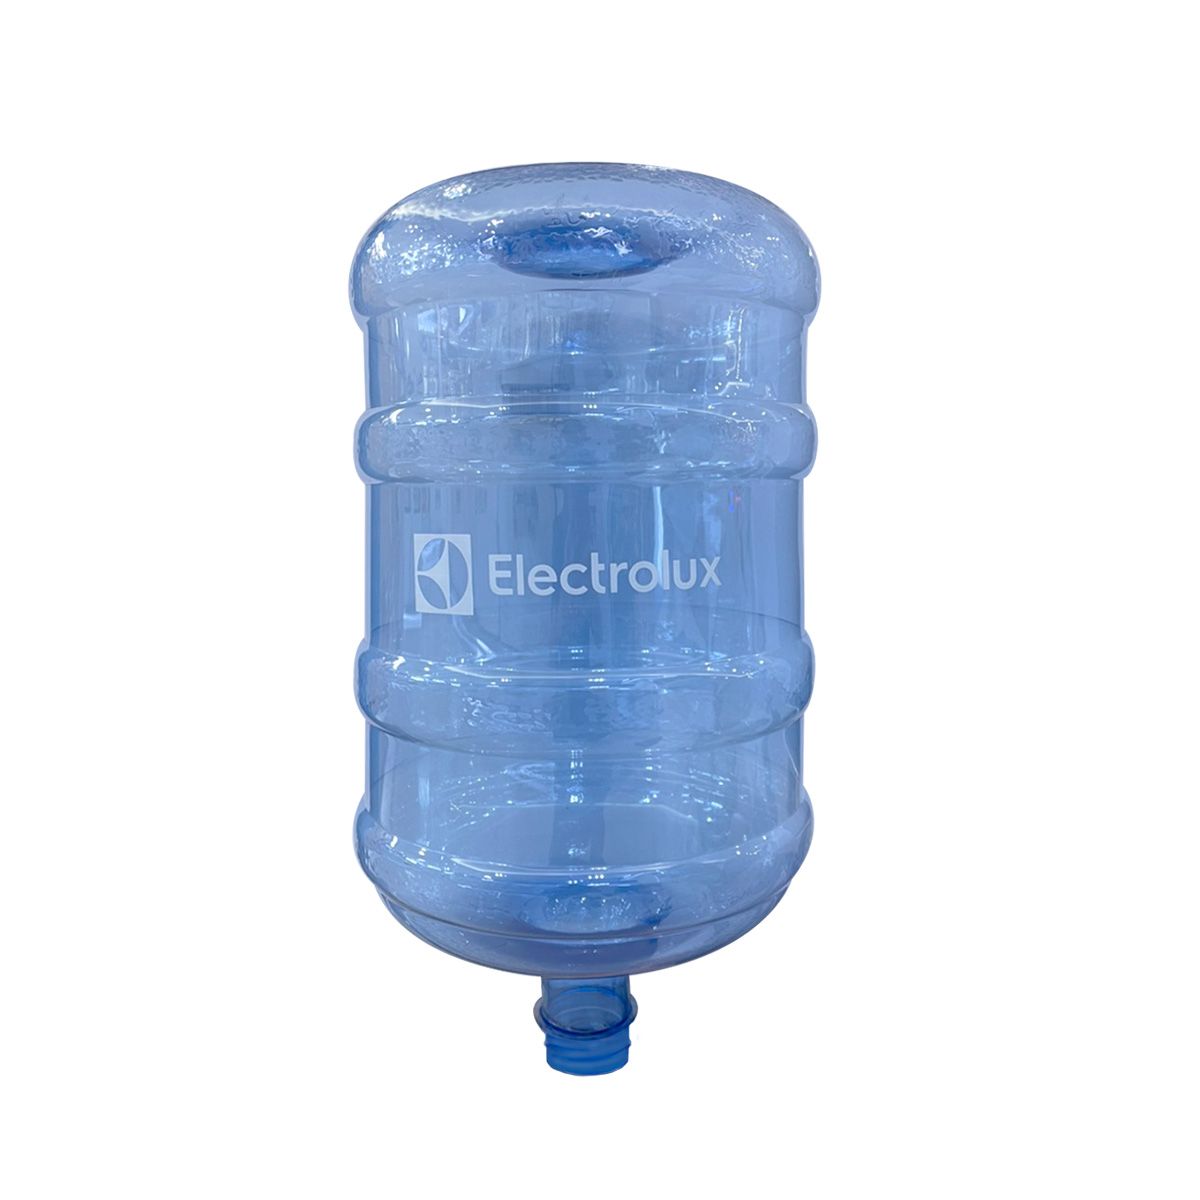 ถังน้ำดื่มทรงกลม ELECTROLUX  รุ่น EWD-TANK01B  ขนาด 18.9 ลิตร สีใส